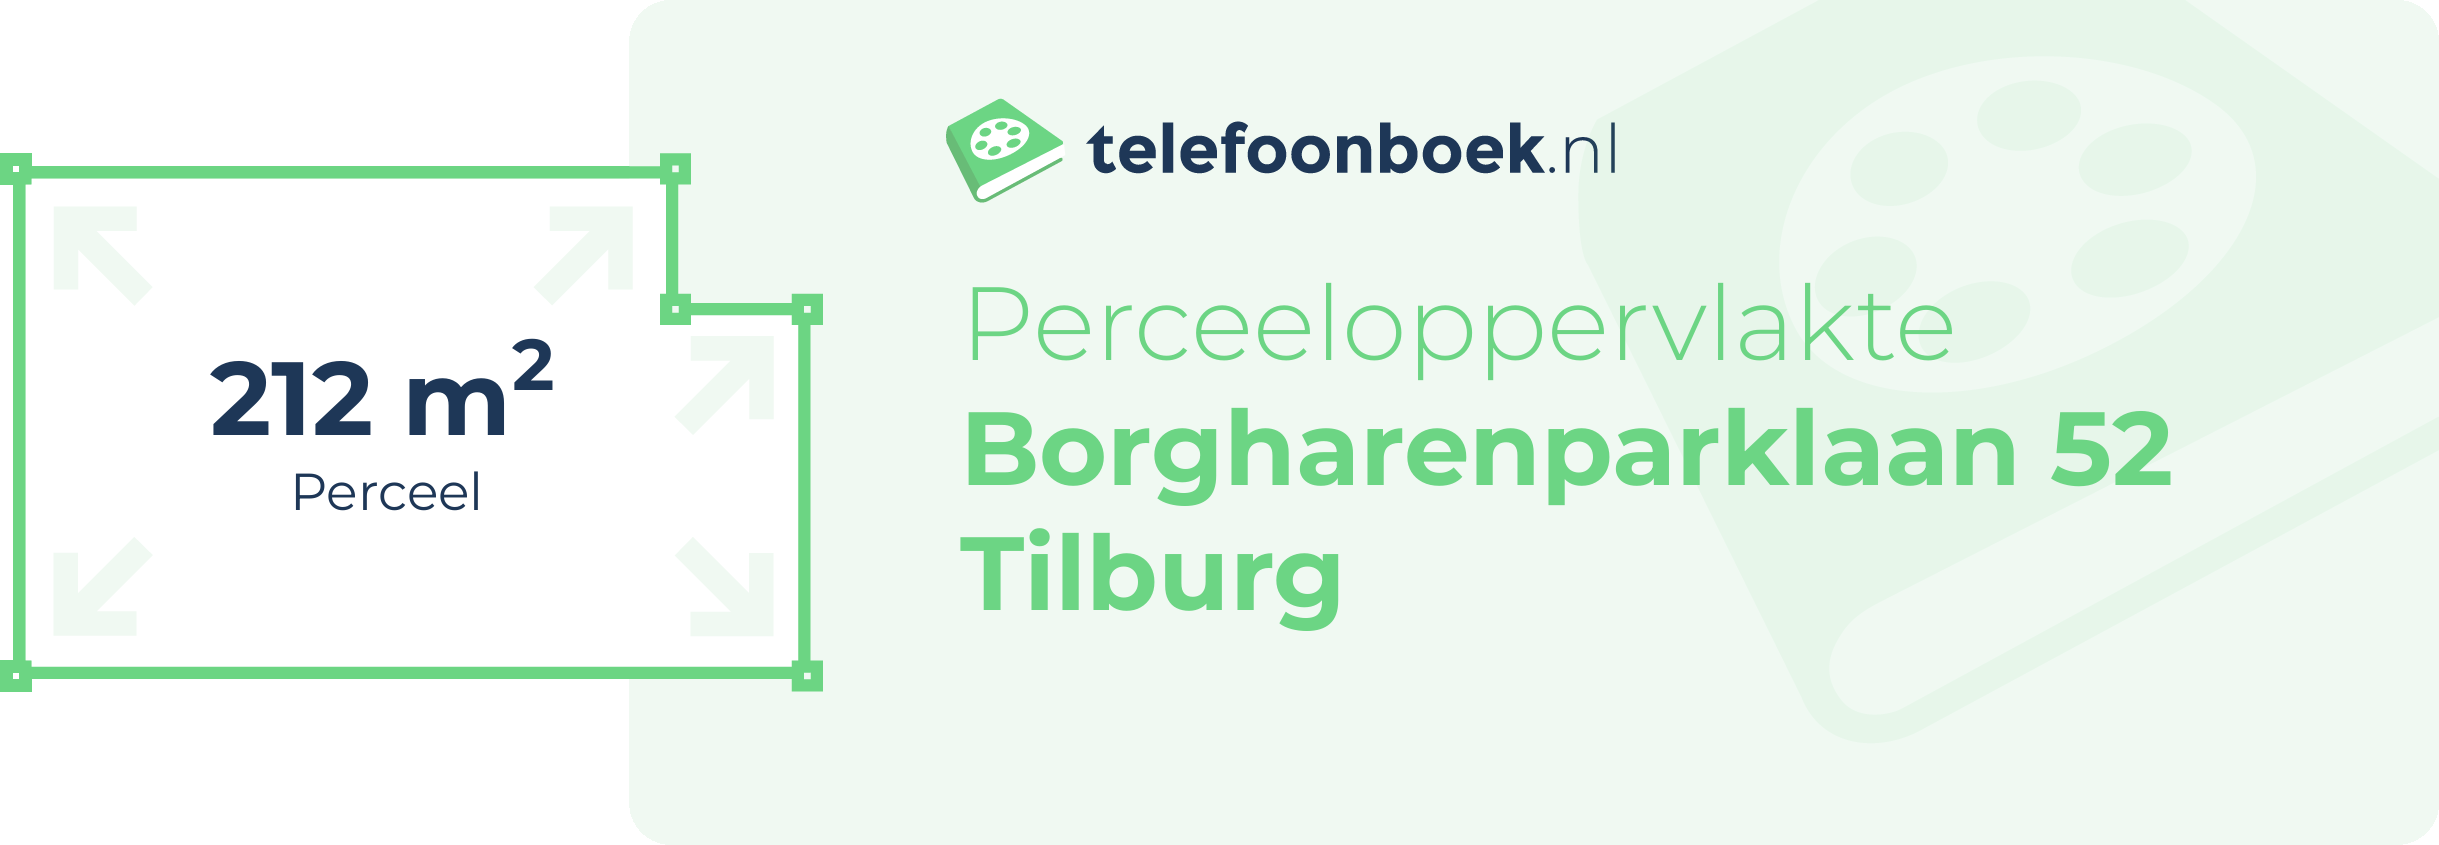 Perceeloppervlakte Borgharenparklaan 52 Tilburg